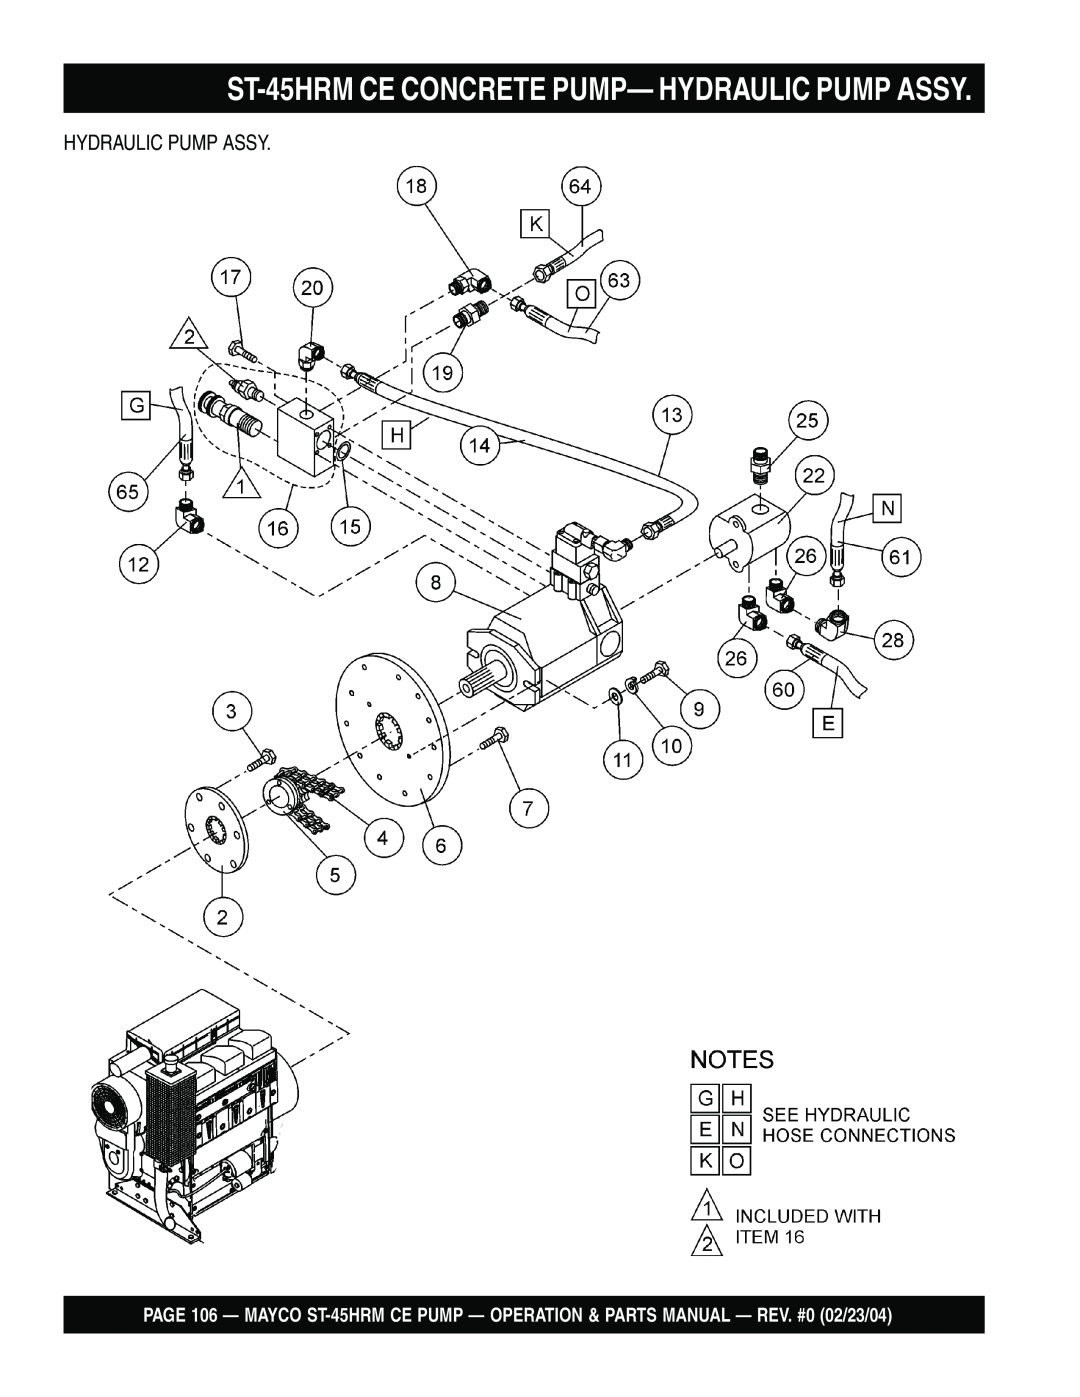 Multiquip ST-45HRM CE manual ST-45HRMCE CONCRETE PUMP— HYDRAULIC PUMP ASSY, Hydraulic Pump Assy 